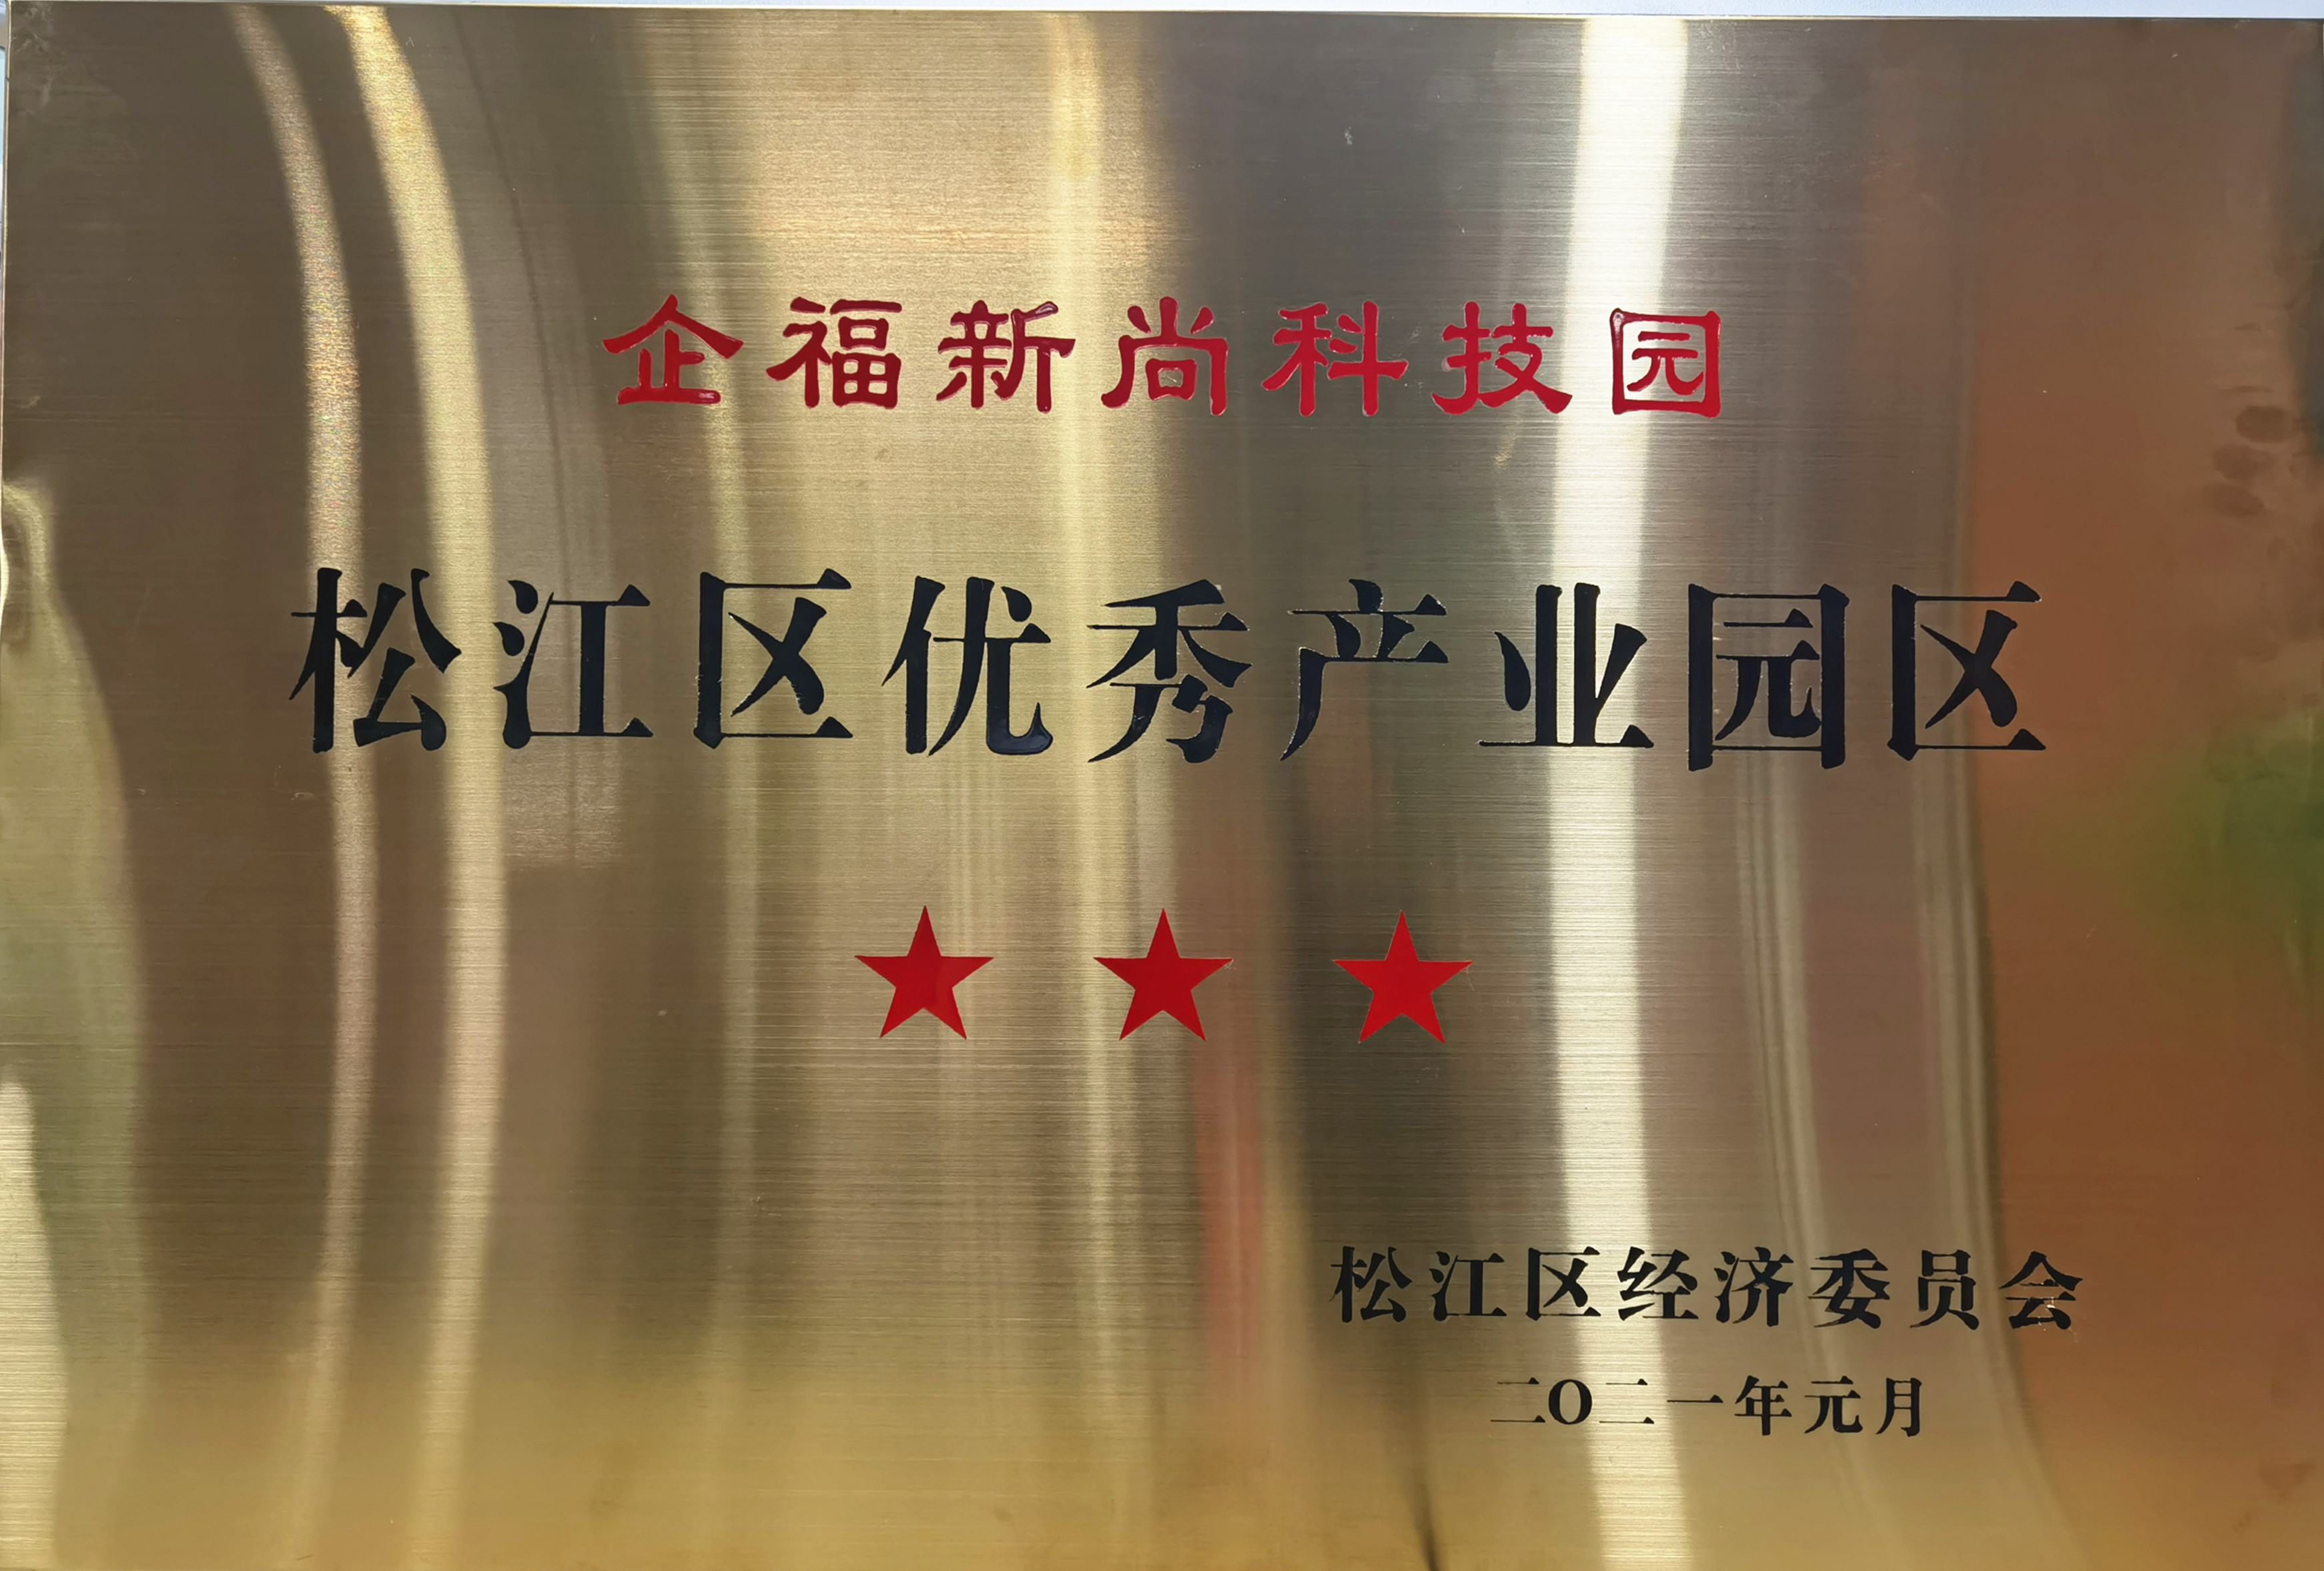 企福新尚科技园获评“三星级”产业园区